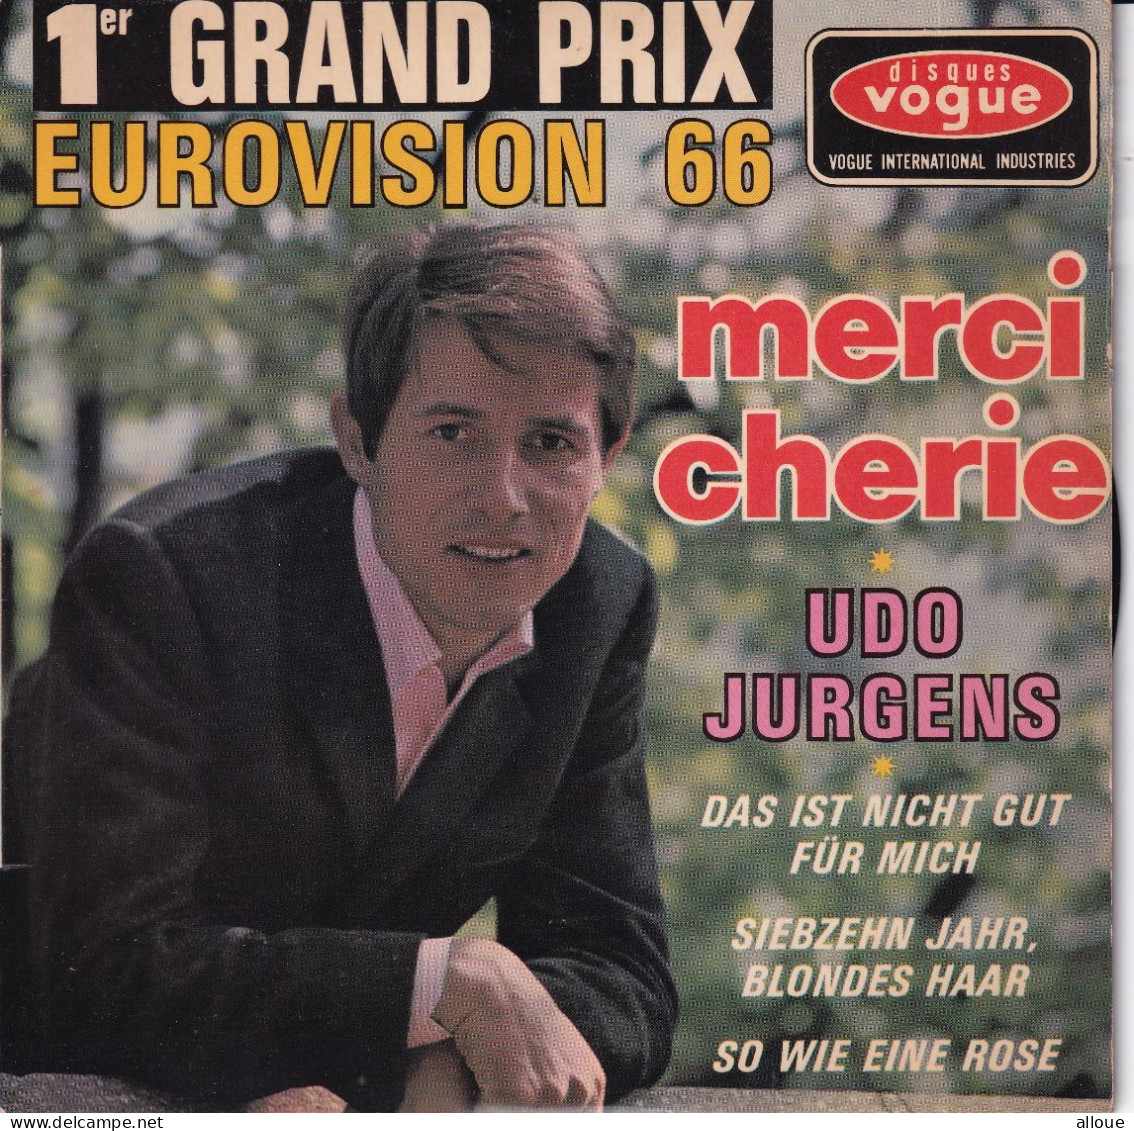 UDO JURGENS - FR EP EUROVISION 1966  - MERCI CHERIE + 3 - Sonstige - Deutsche Musik